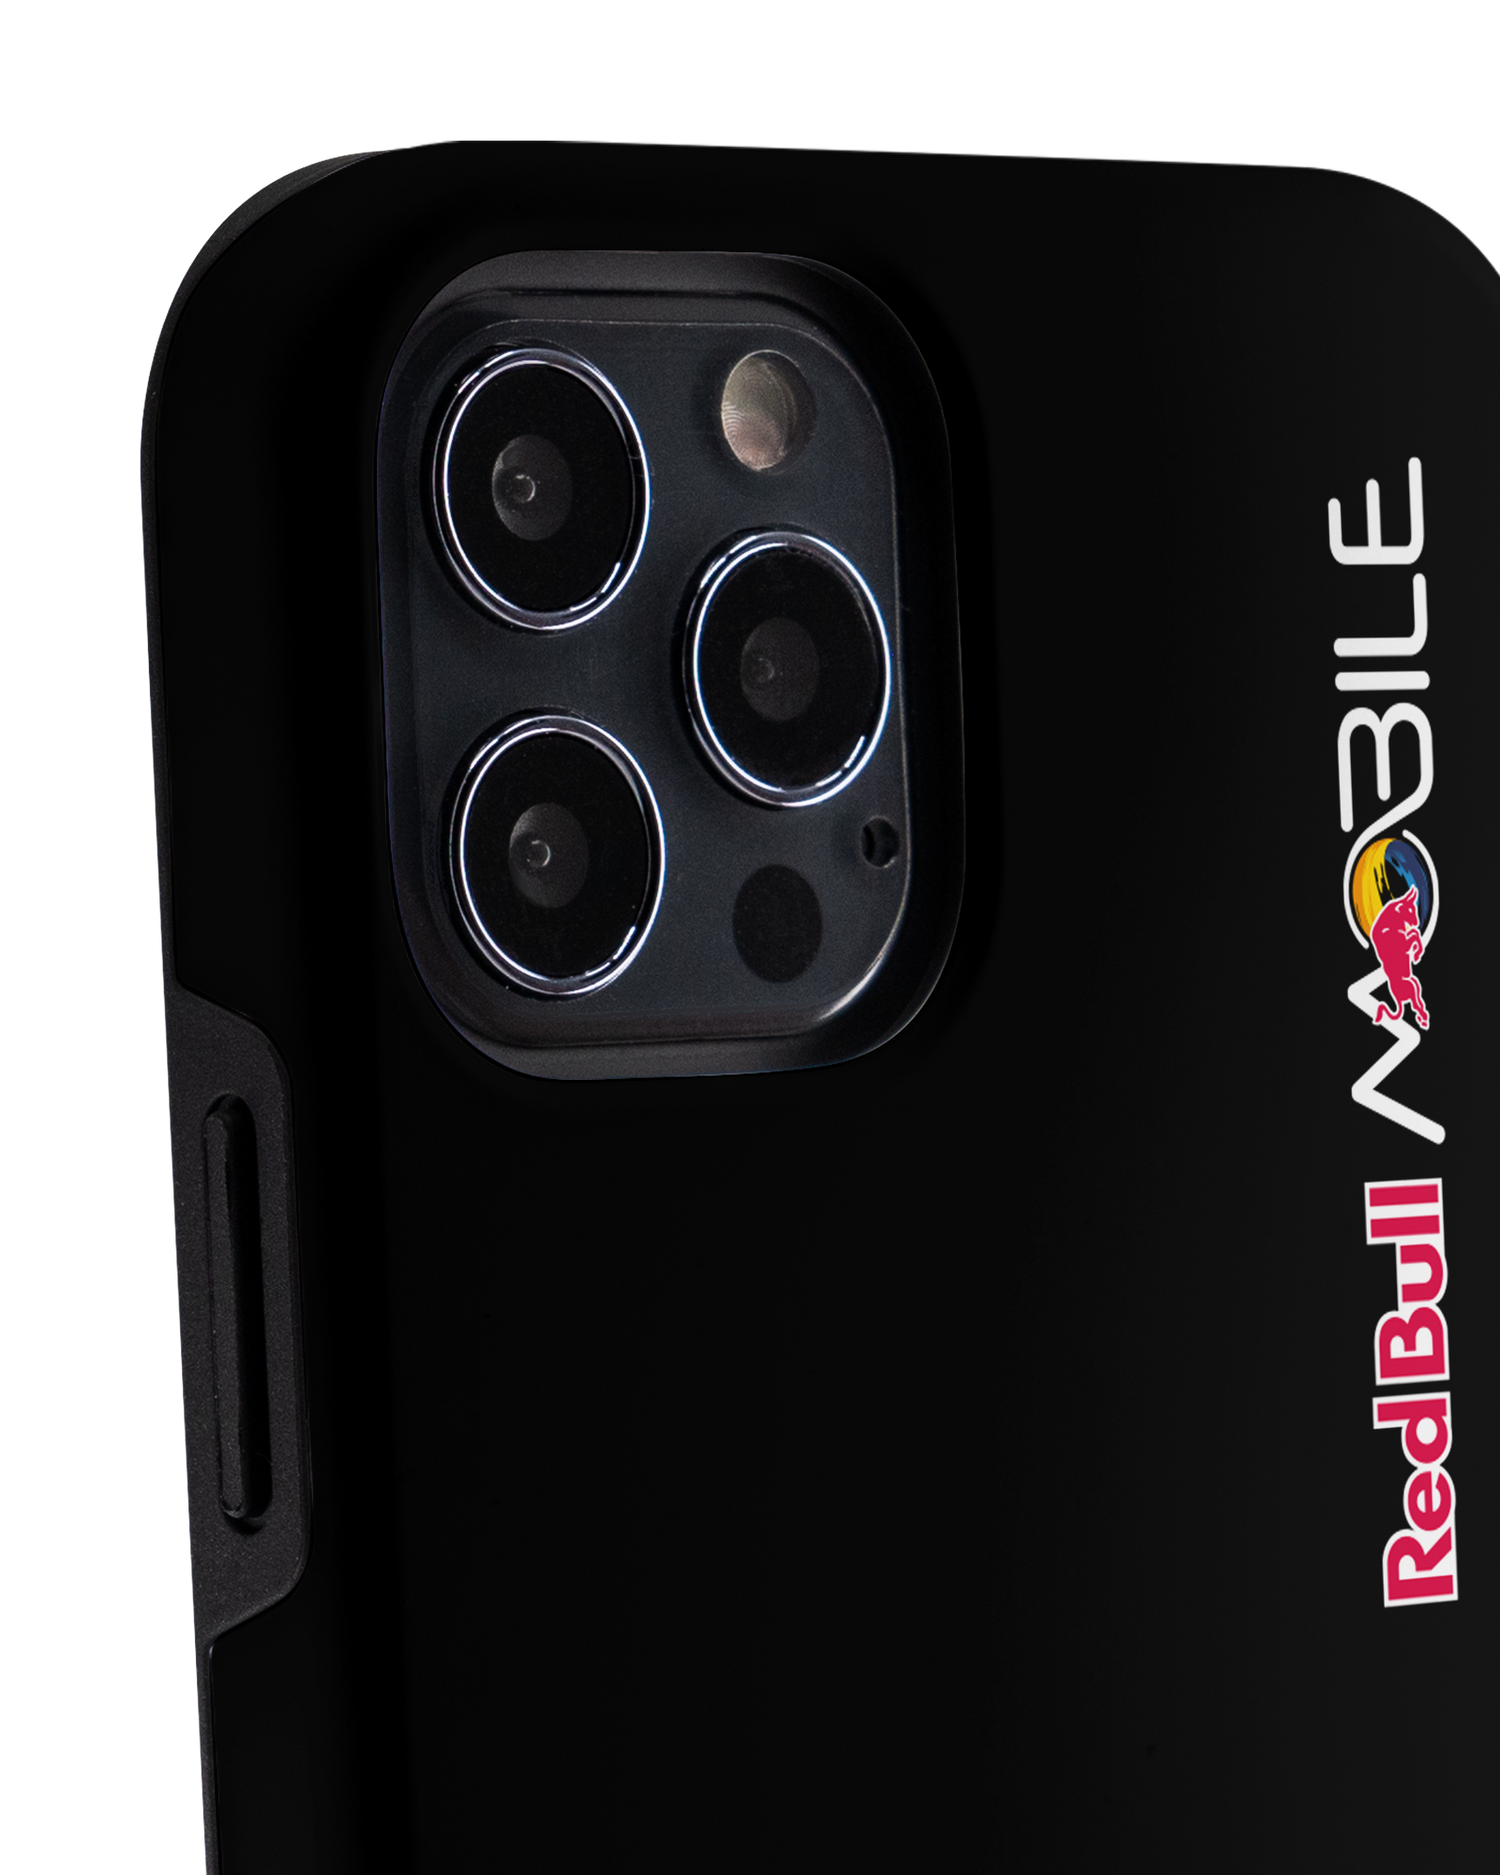 Red Bull MOBILE Black Premium Phone Case Apple iPhone 12, Apple iPhone 12 Pro